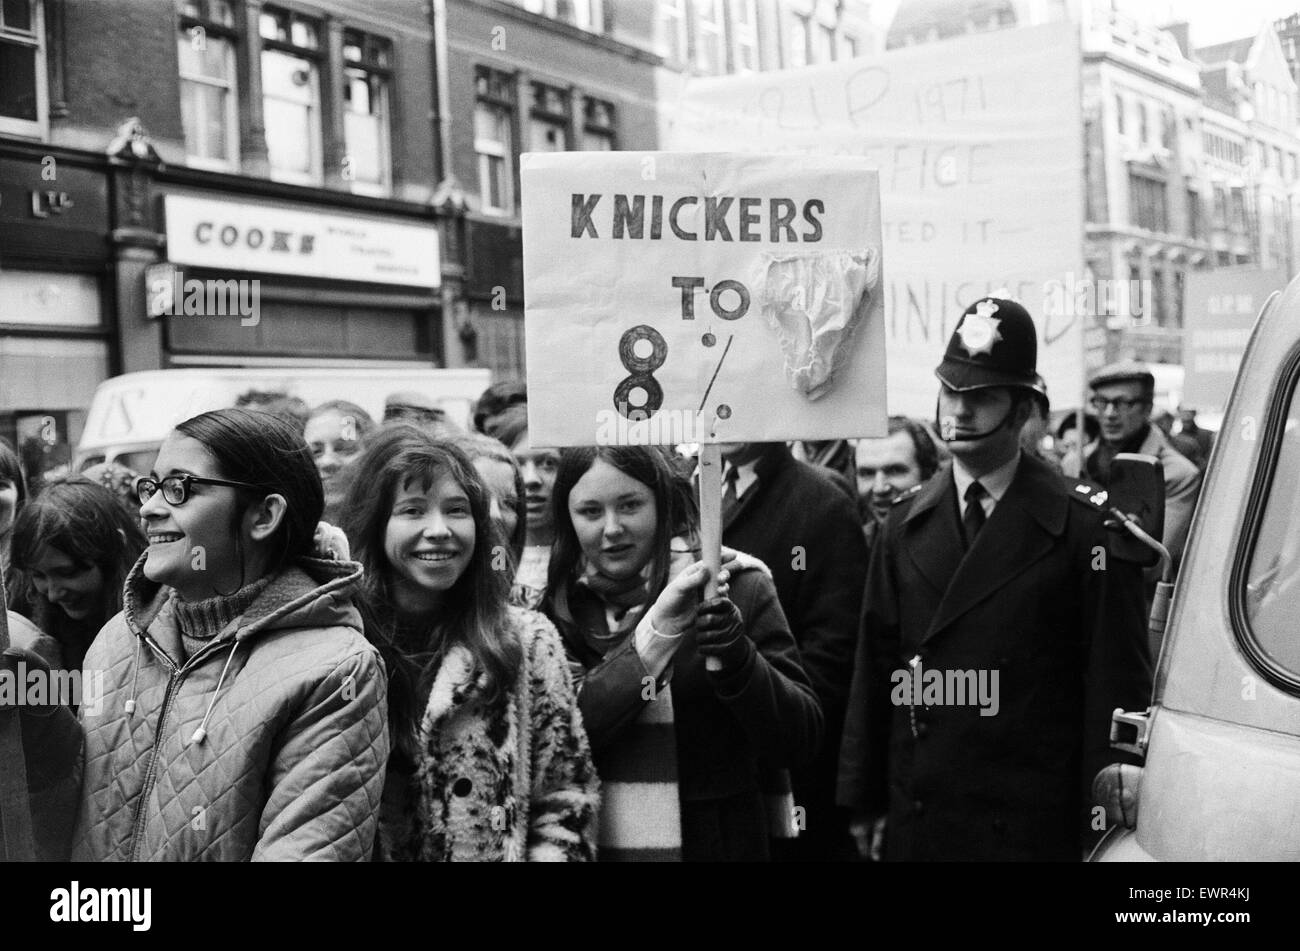 Arrabbiato Post Office i lavoratori che sono in sciopero, marzo attraverso le strade di Londra, sul loro modo di Speakers Corner in Hyde Park. Un gruppo di telephonists nel marzo, portando un banner dicendo "mutande a 8%". Londra, 4 marzo 1971. Foto Stock